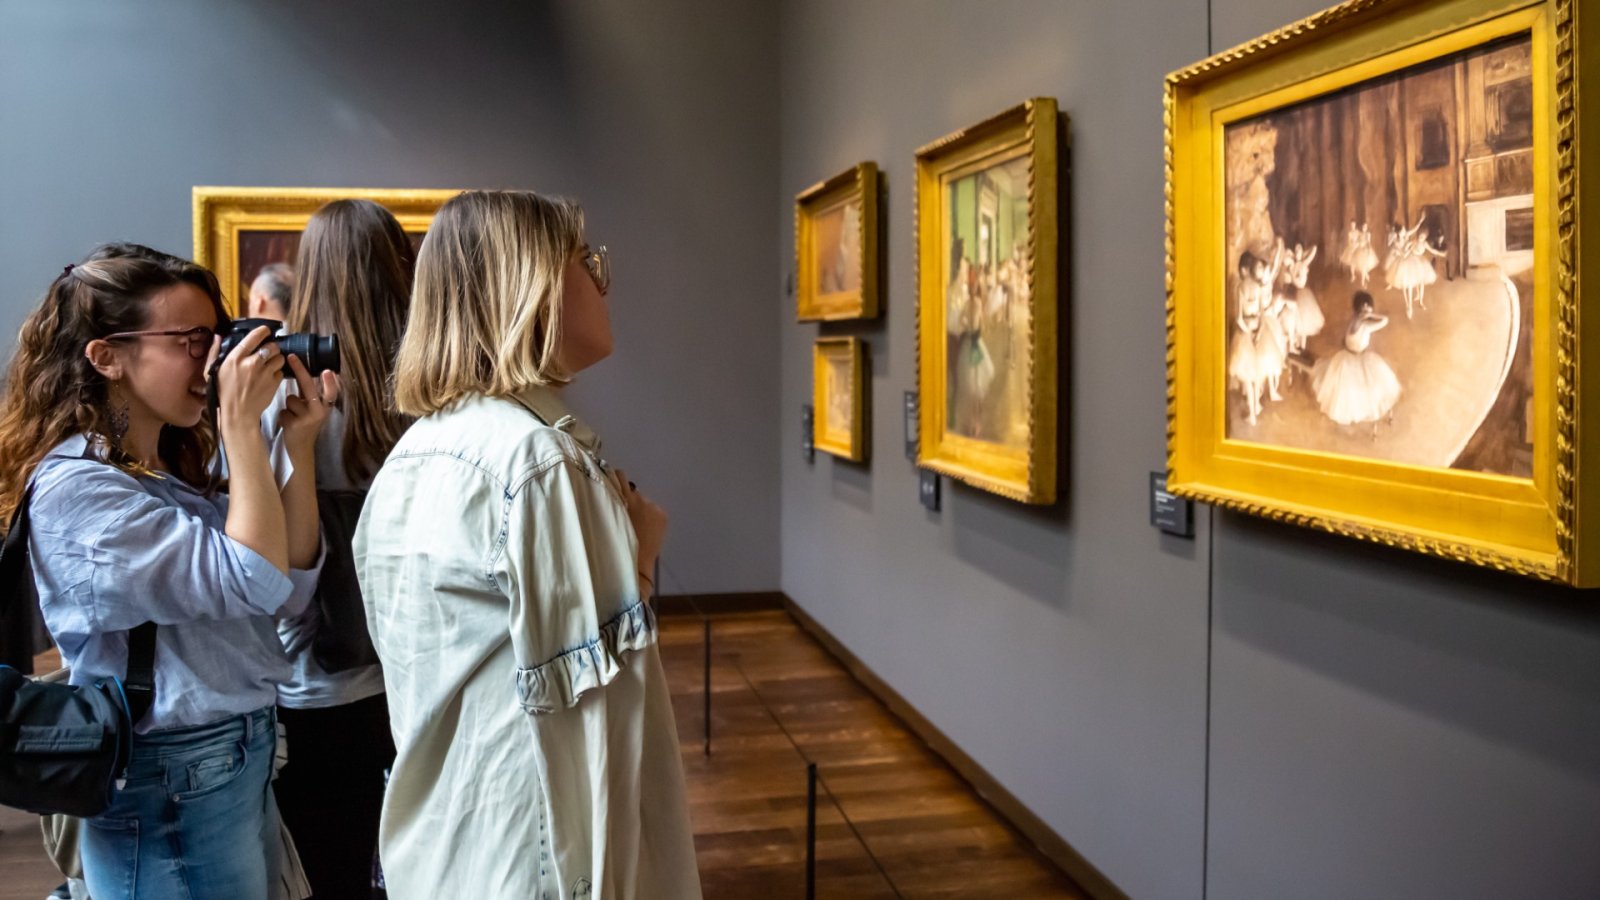 A Musée d'Orsay híres műalkotásai végül visszakerültek az örökösökhöz